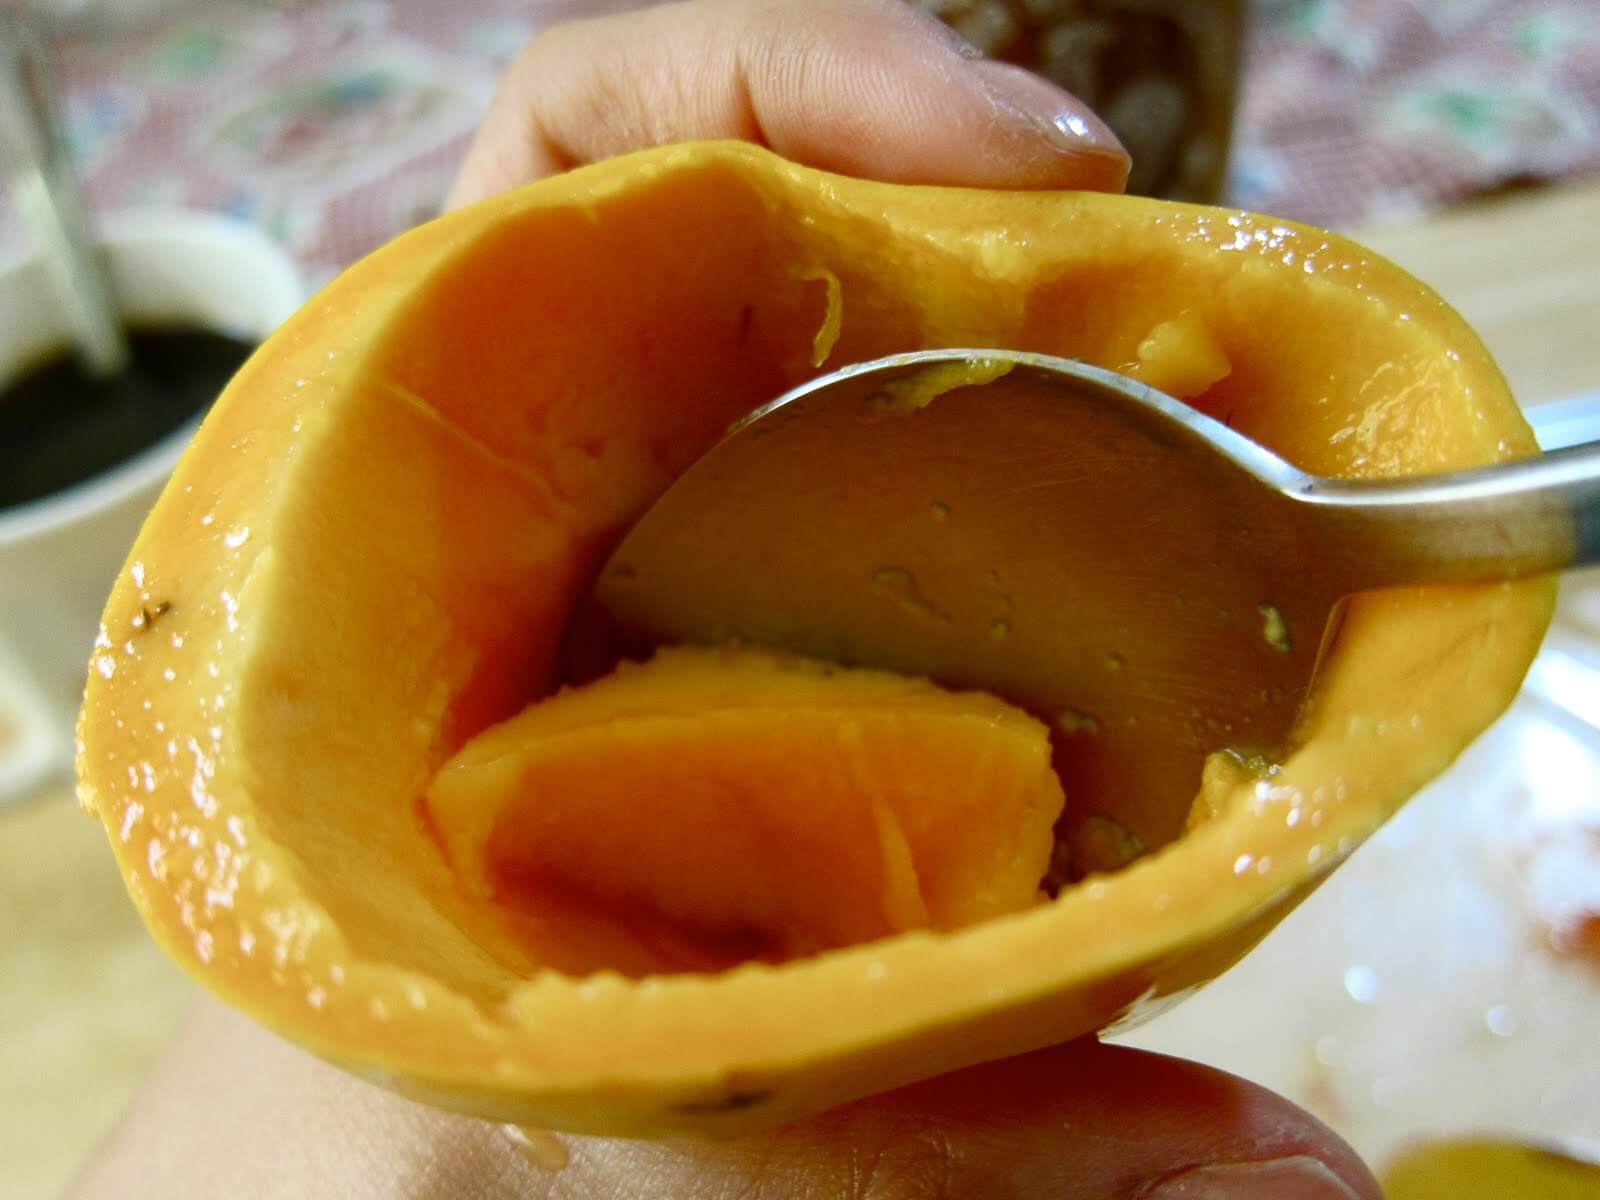 Как разрезать манго с косточкой правильно, красиво, пополам, кубиками, квадратиками, дольками. пошаговая инструкция с фото